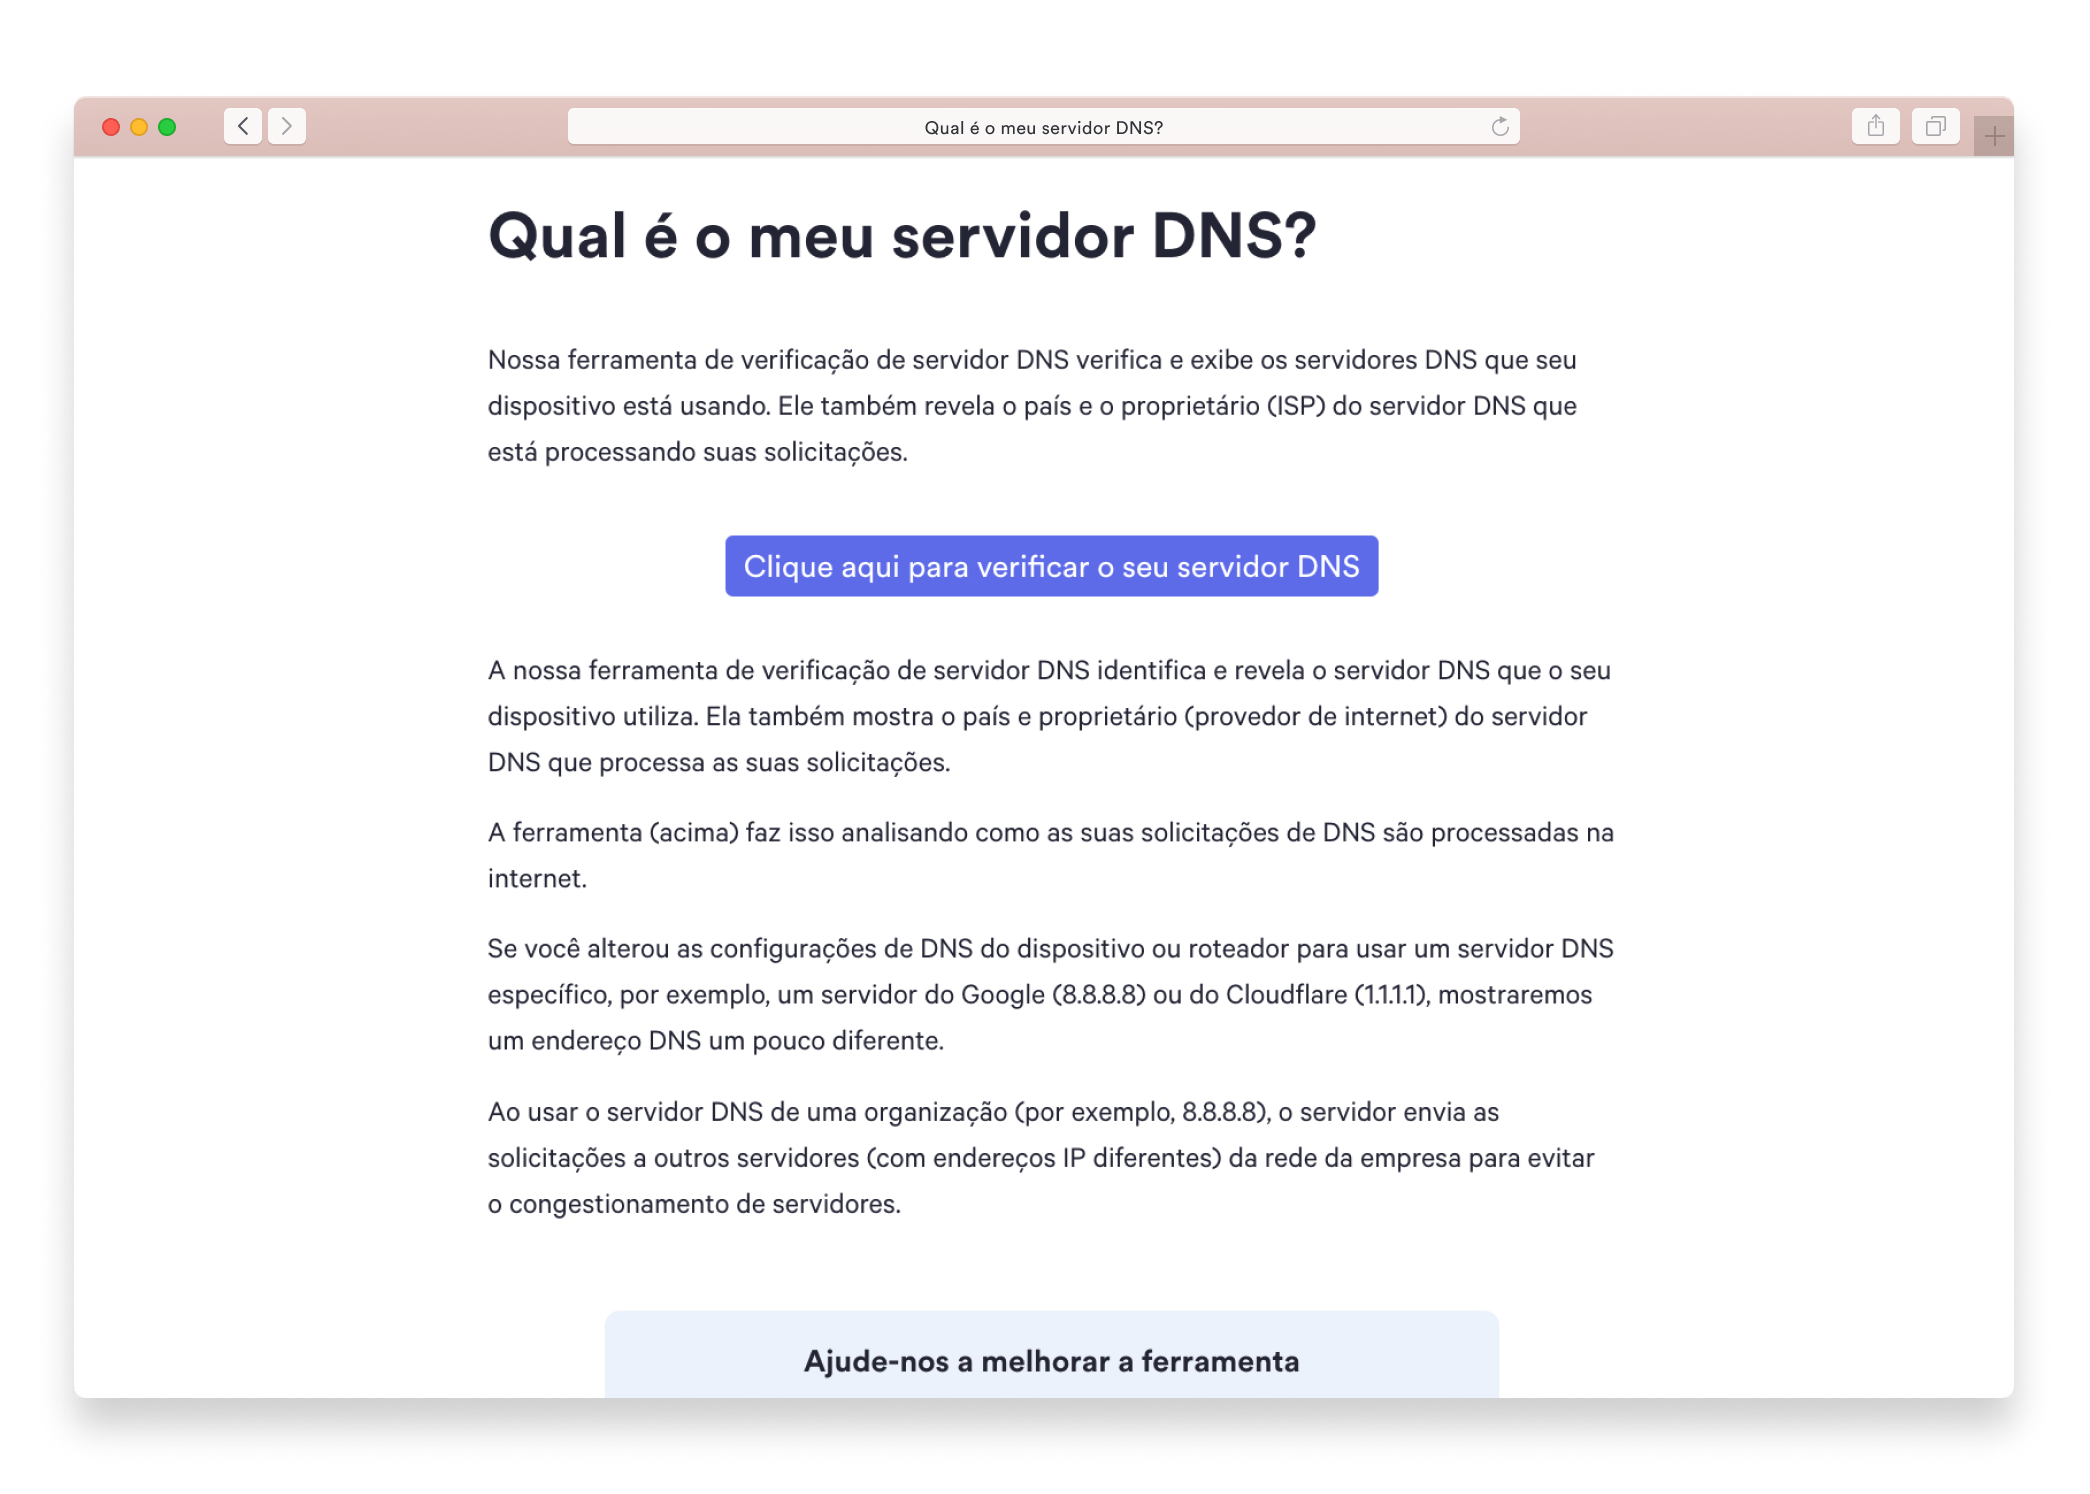 Qual é o meu servidor DNS?